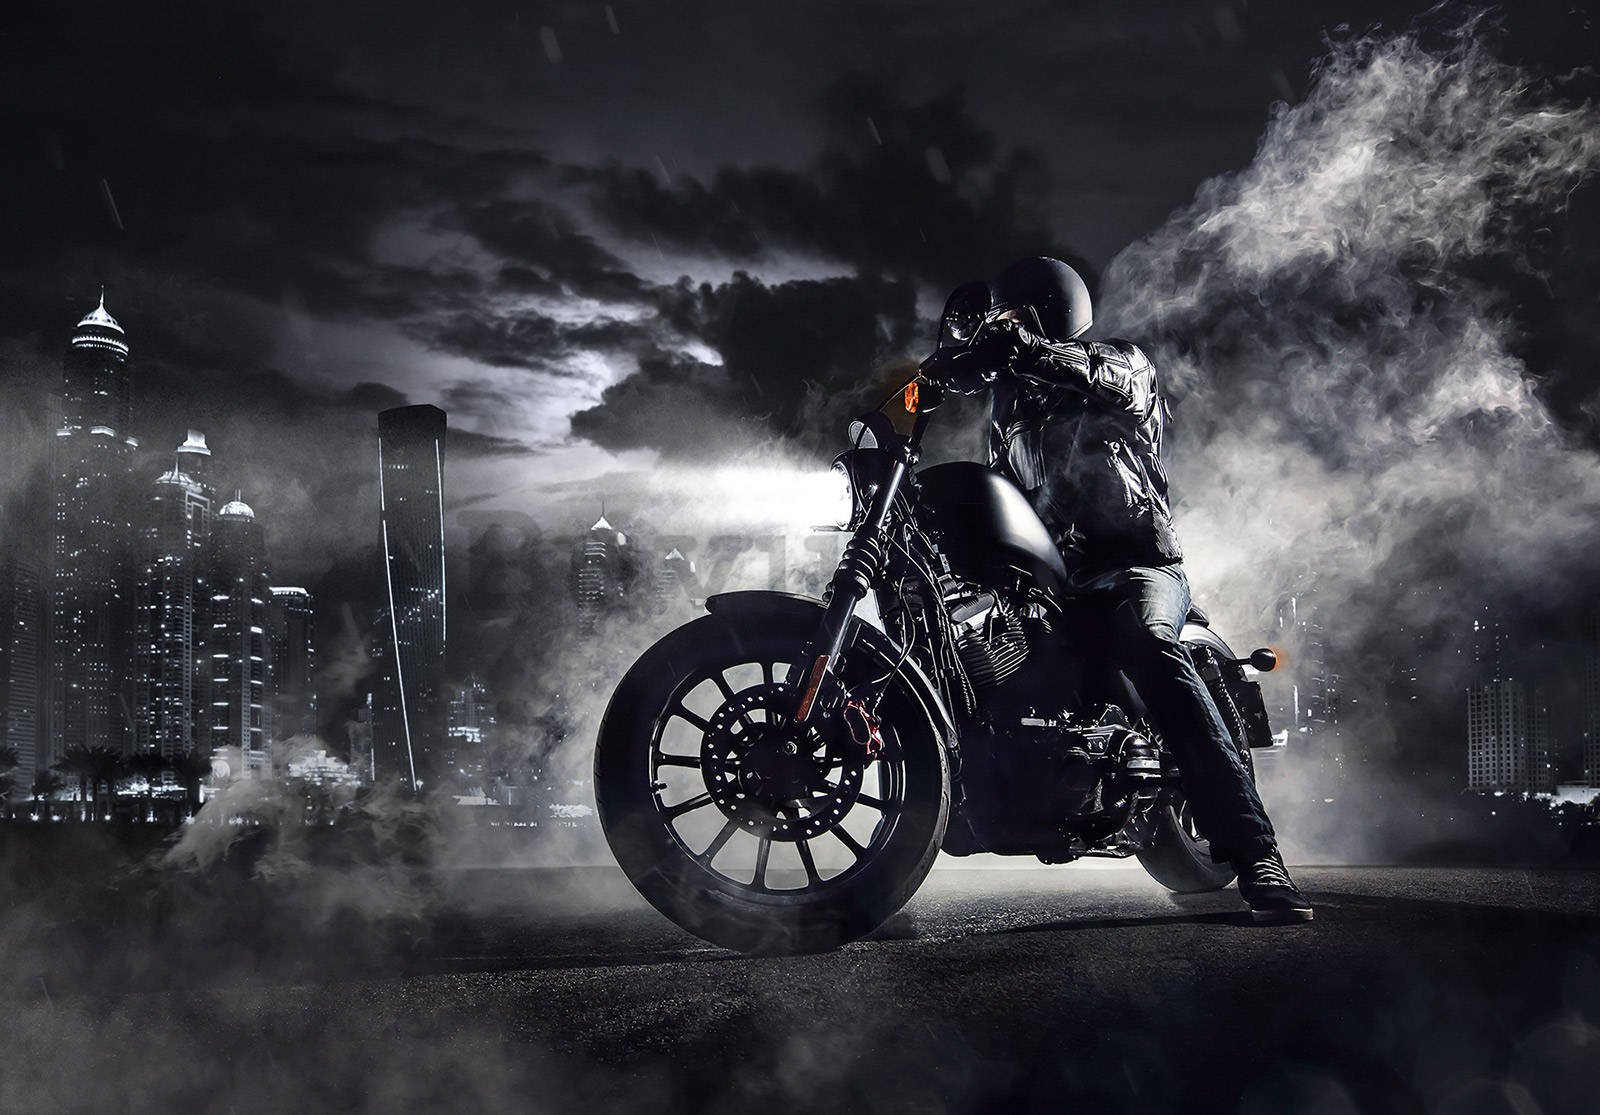 Vlies foto tapeta: Motociklista u noćnom gradu - 254x184 cm